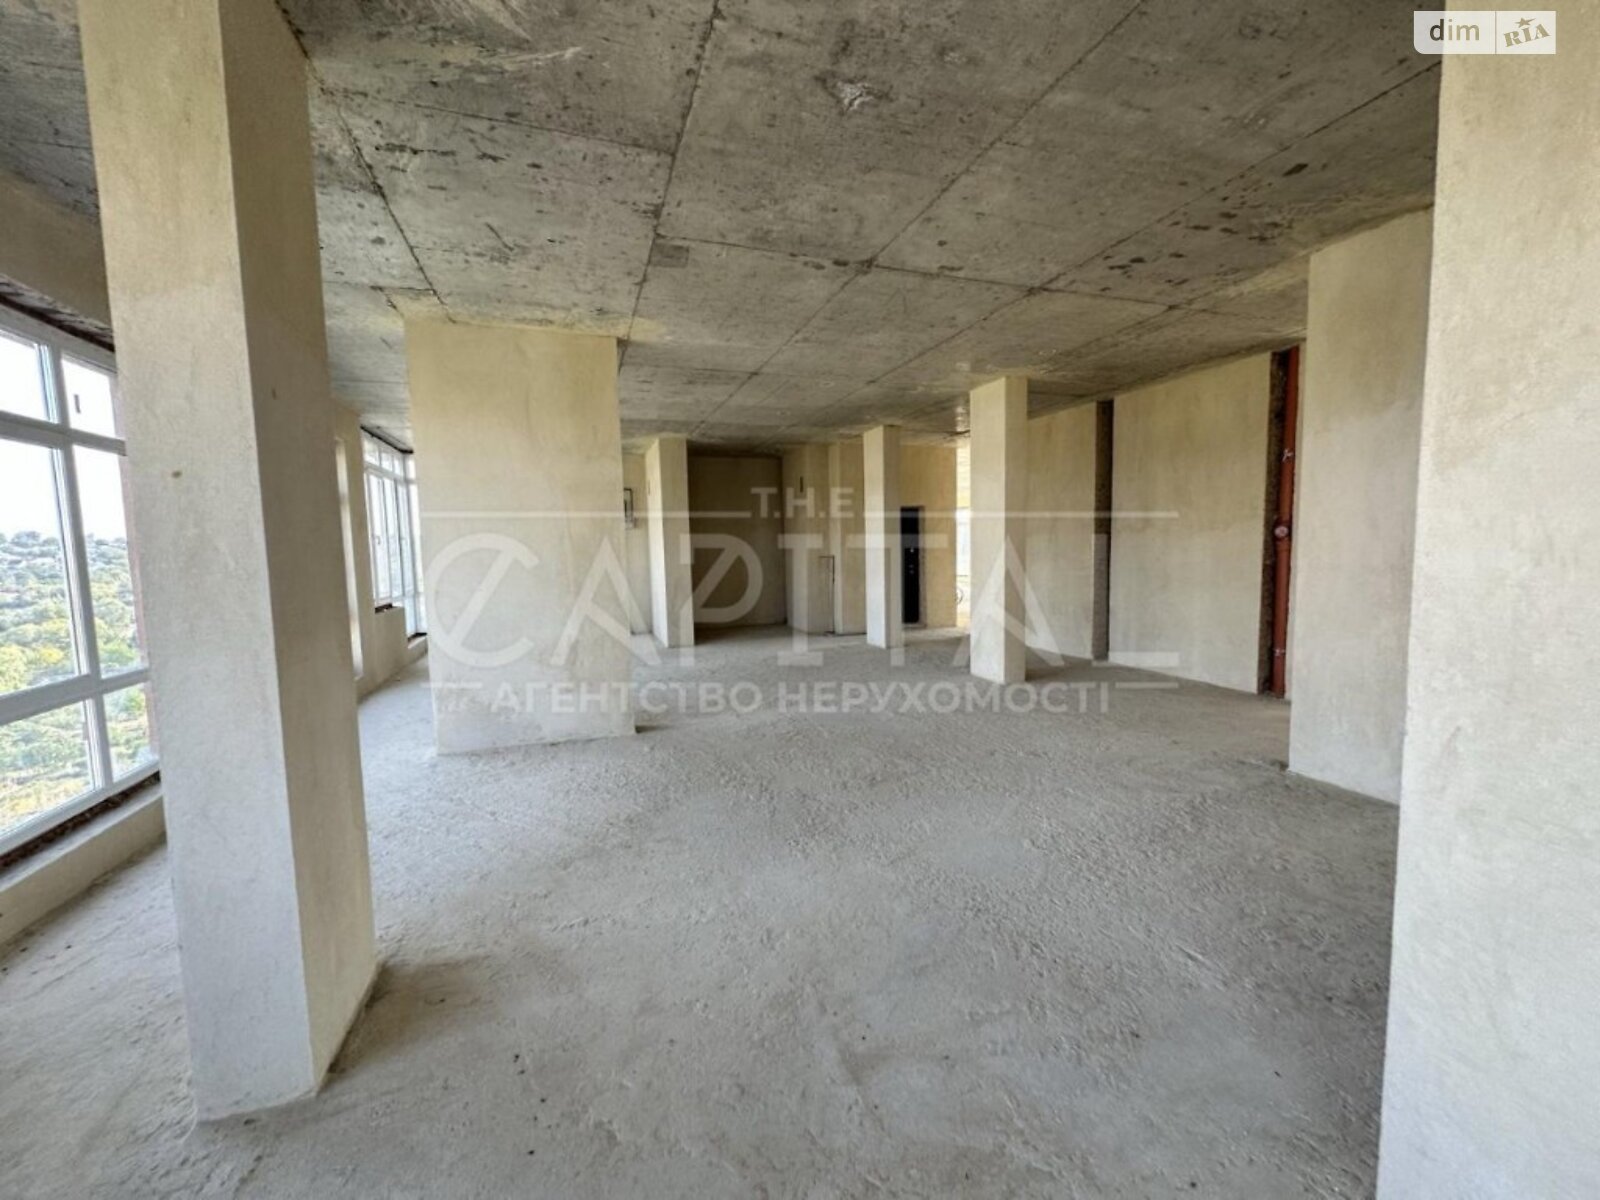 Продажа двухкомнатной квартиры в Умани, на ул. Крепостная 54, район Умань фото 1